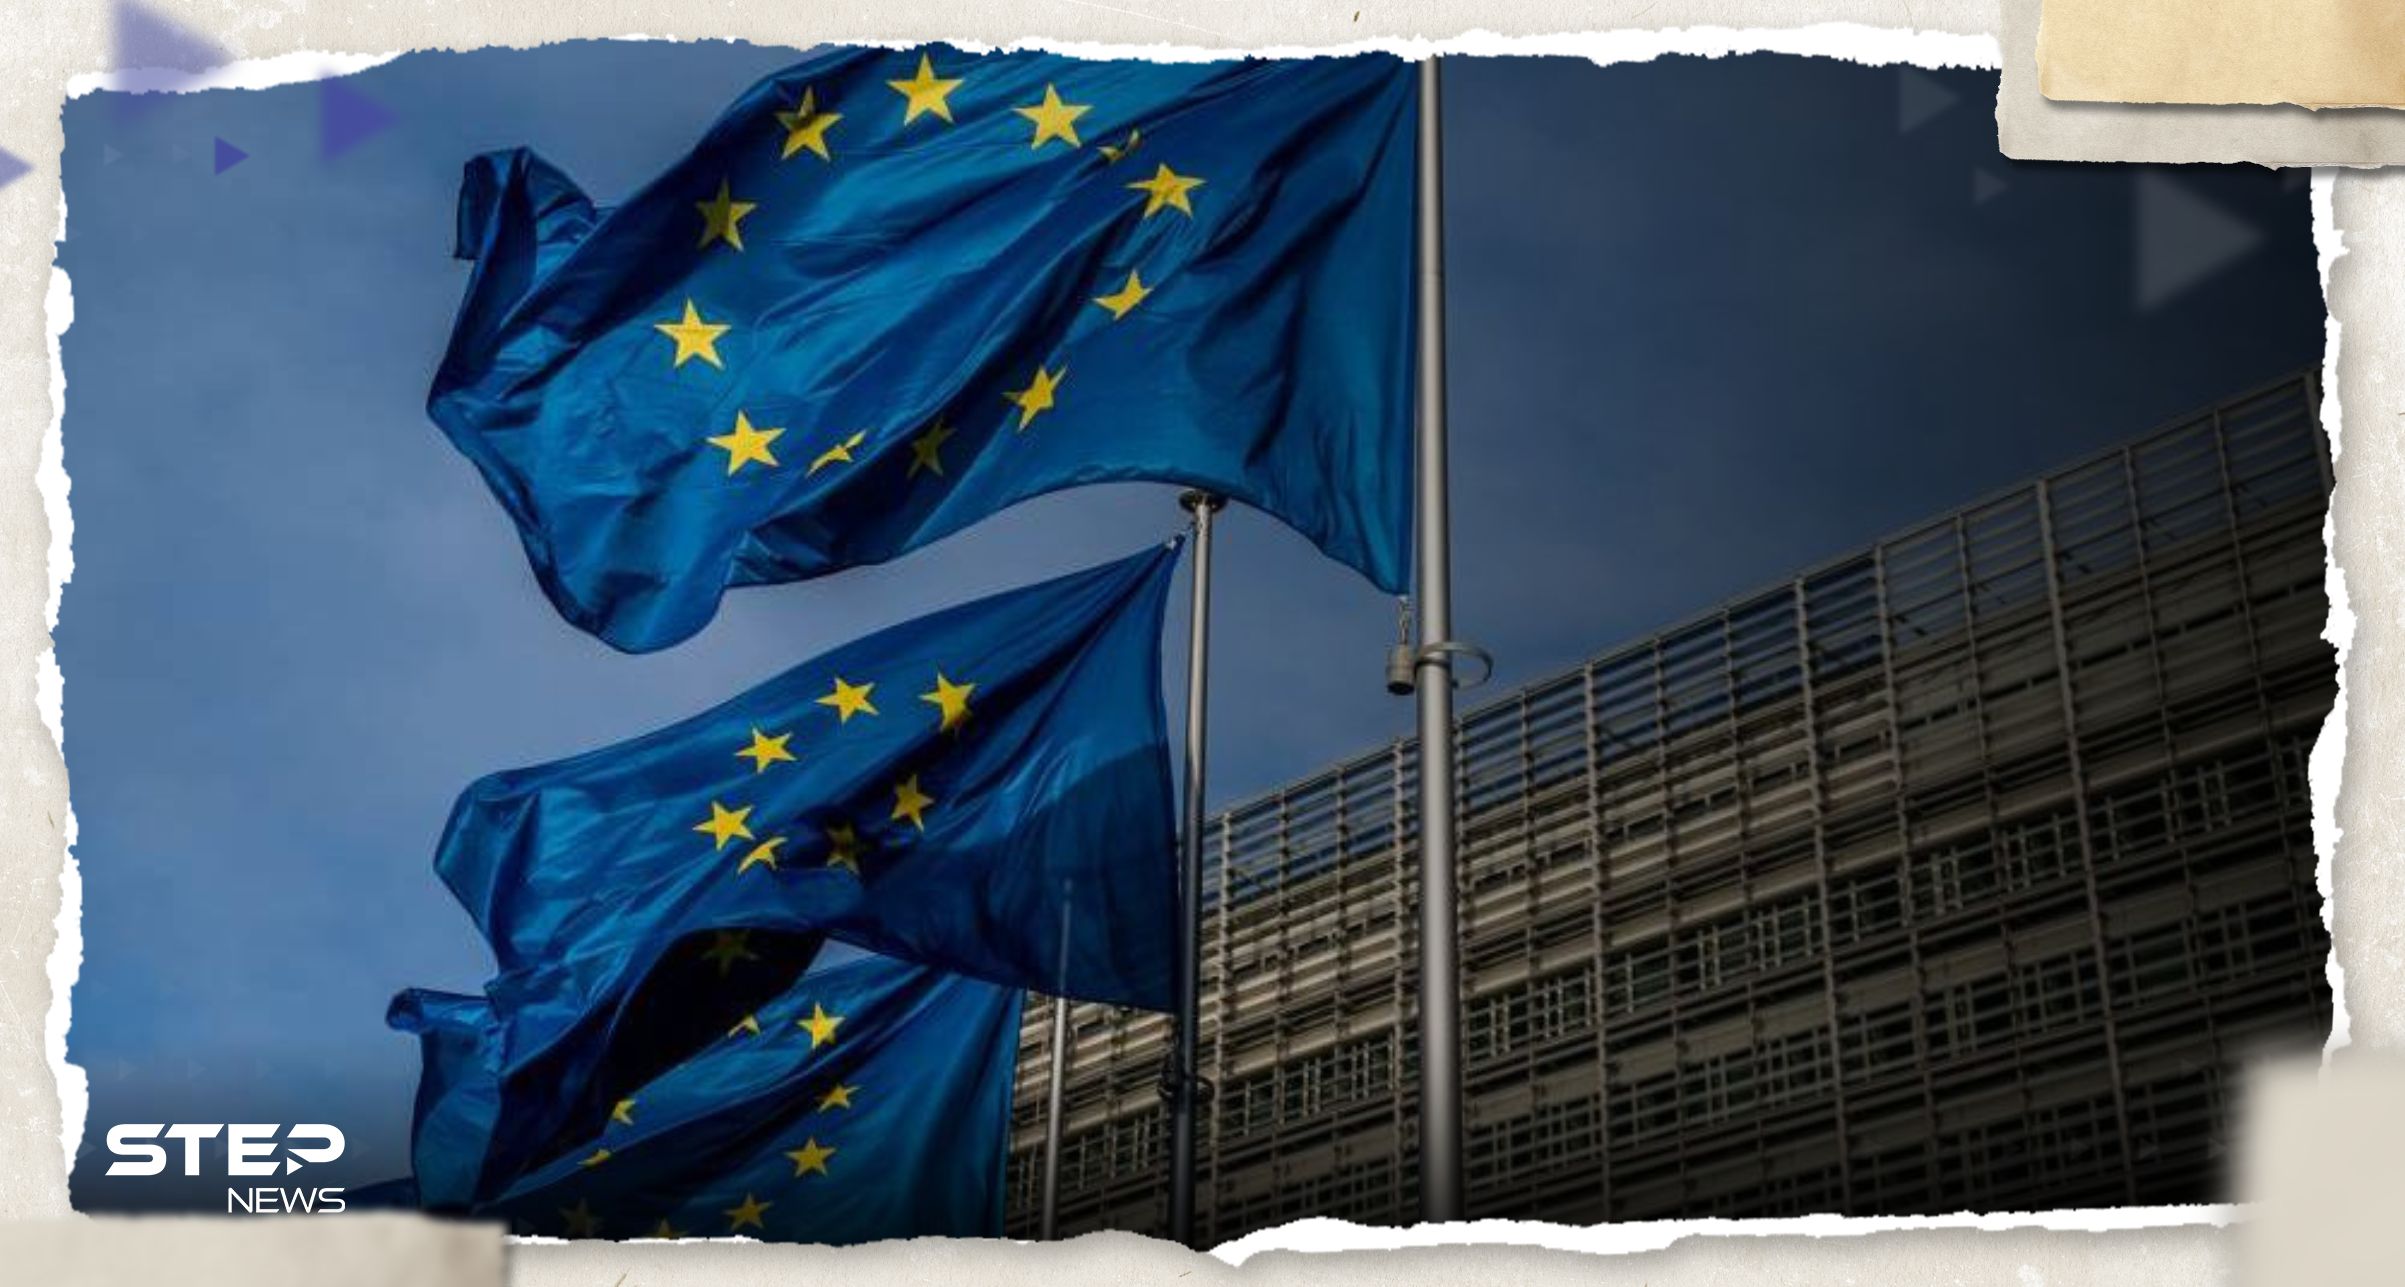 الاتحاد الأوروبي يبدأ أولى خطواته لفرض عقوبات على النيجر